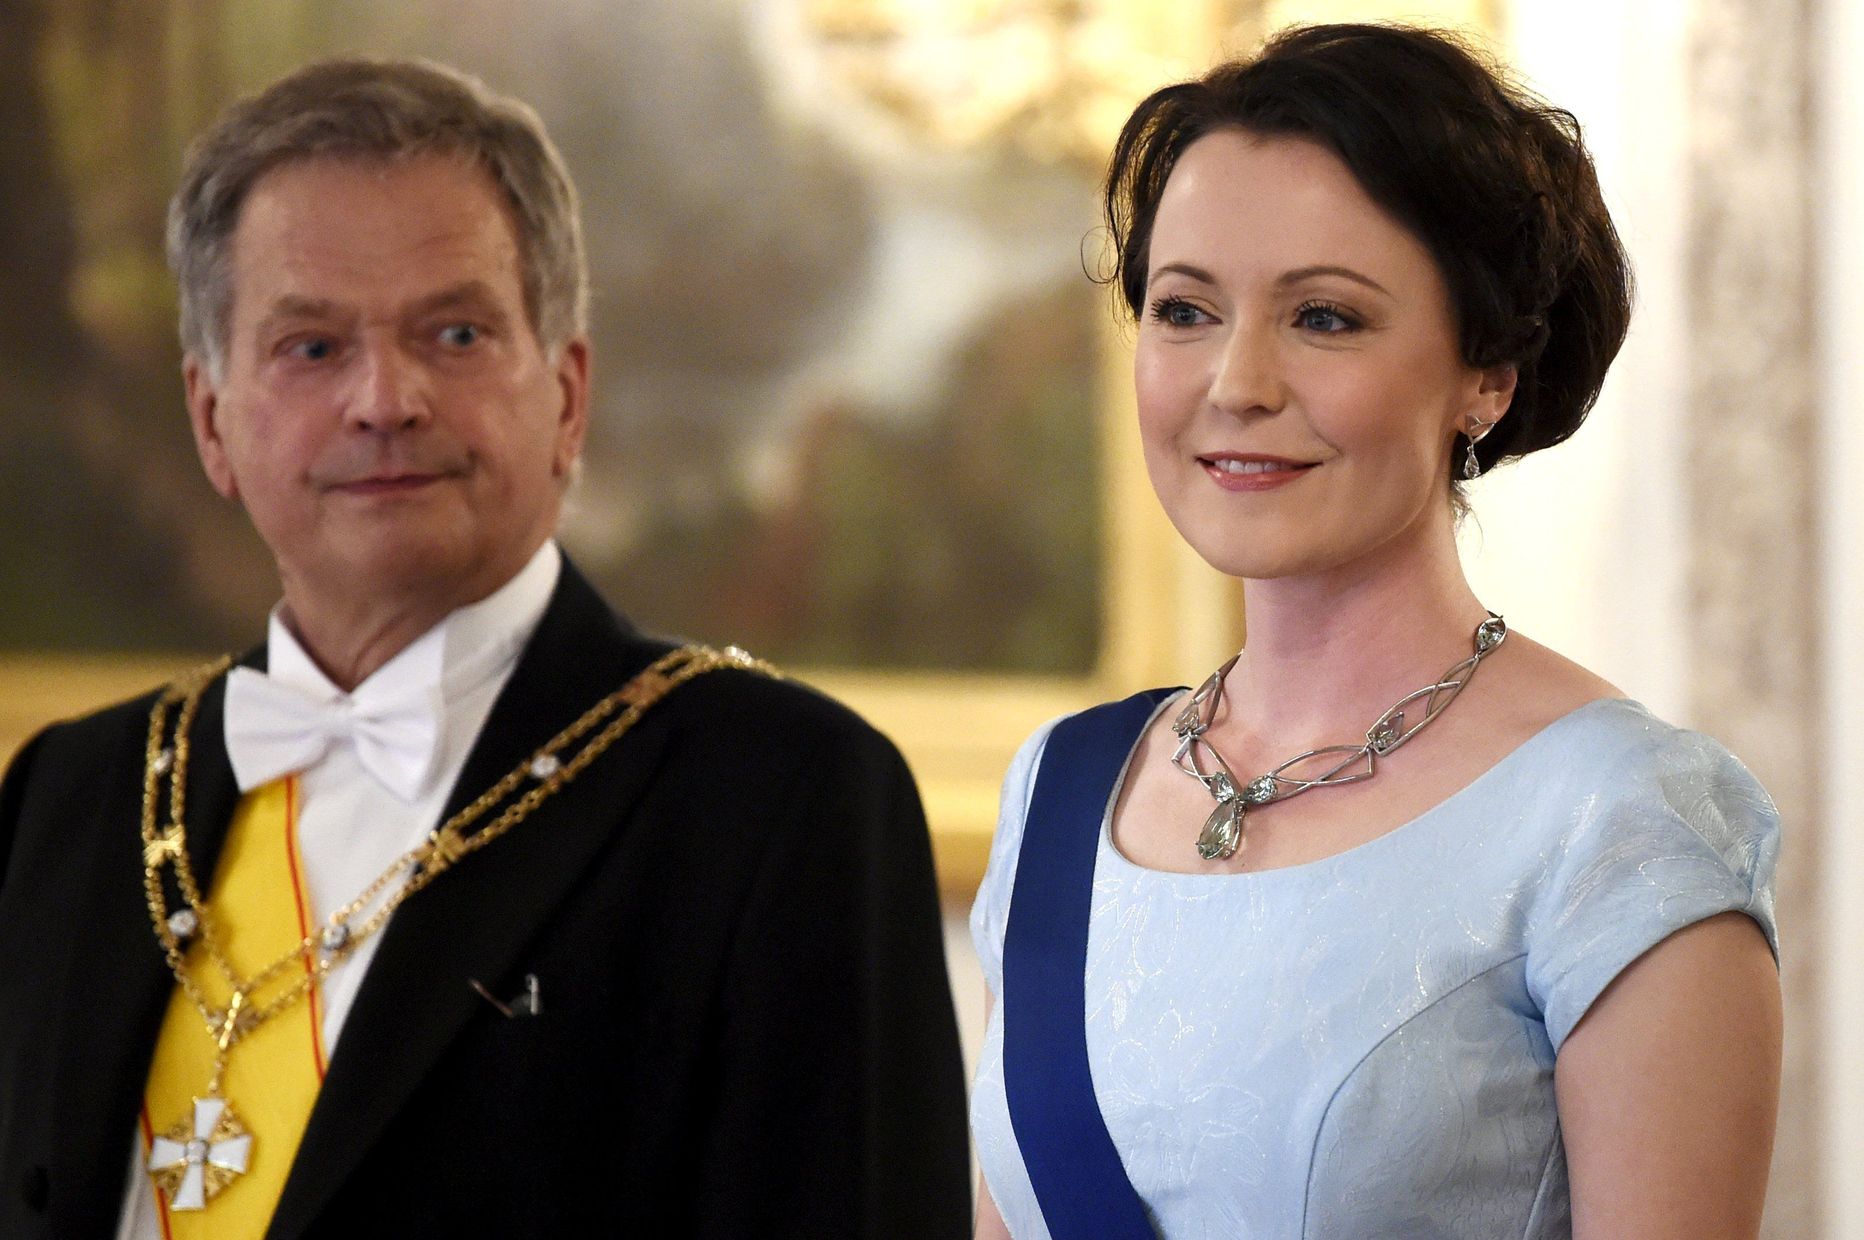 Soome president Sauli Niinistö ja Jenni Haukio abiellusid 2009. aastal.